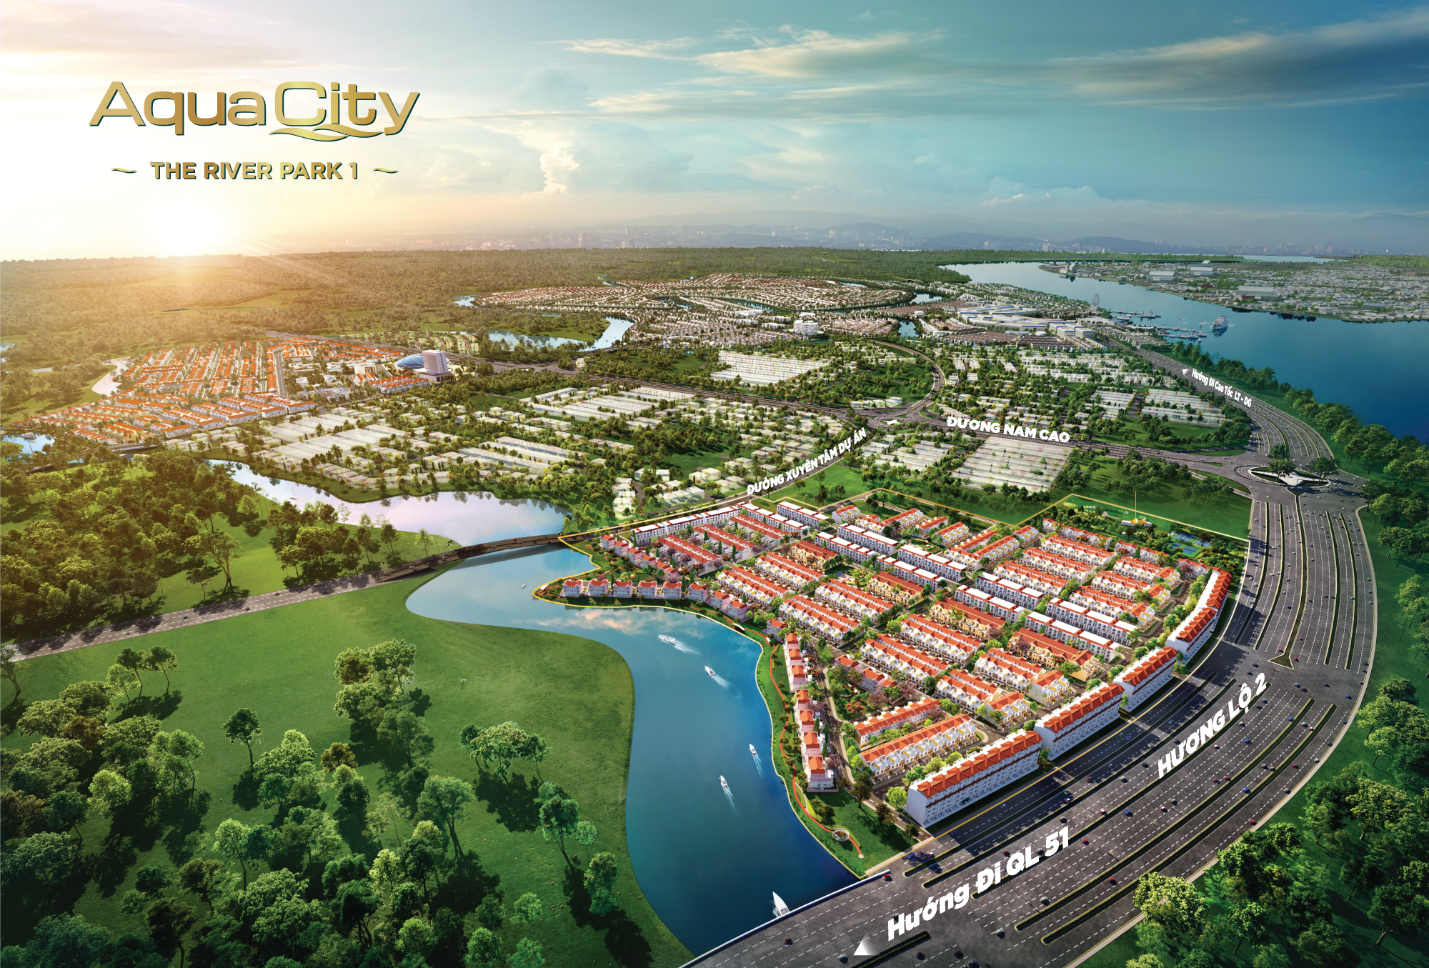 River Park 1 tại Aqua City chinh phục khách hàng bằng lợi thế cửa ngõ đắc địa của một đô thị được quy hoạch hiện đại và hoàn chỉnh.